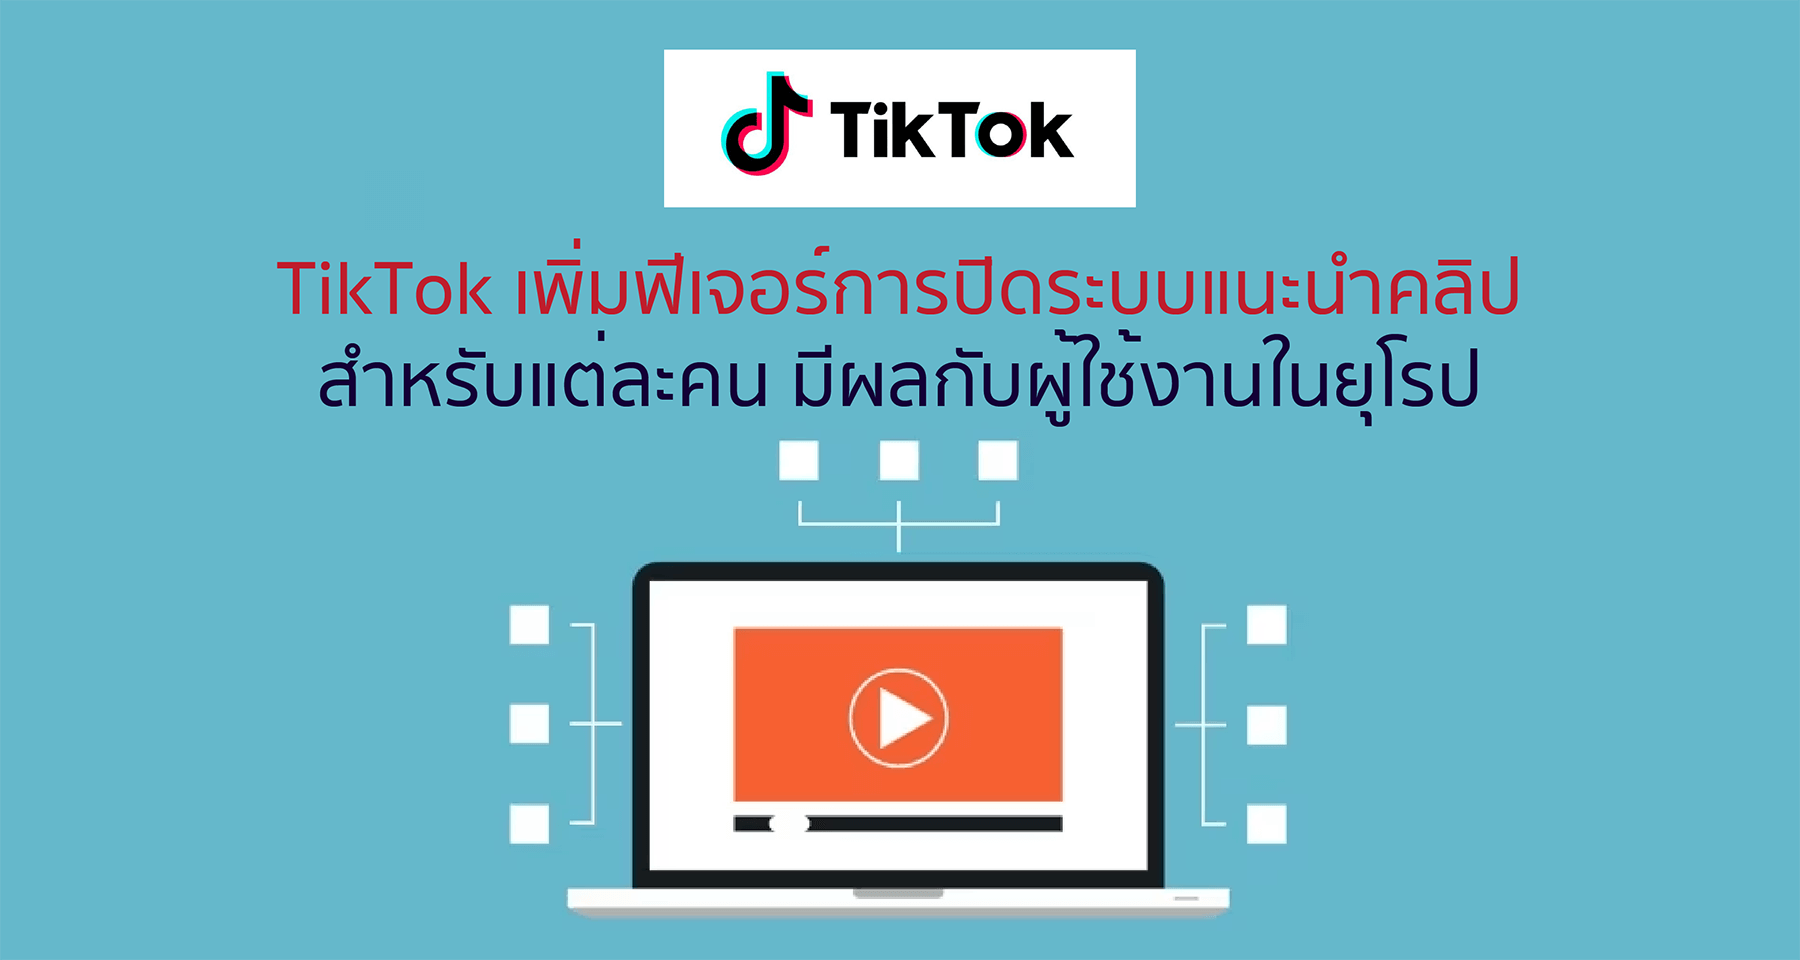 TikTok เพิ่มฟีเจอร์การปิดระบบแนะนำคลิปสำหรับแต่ละคน มีผลกับผู้ใช้งานในยุโรป